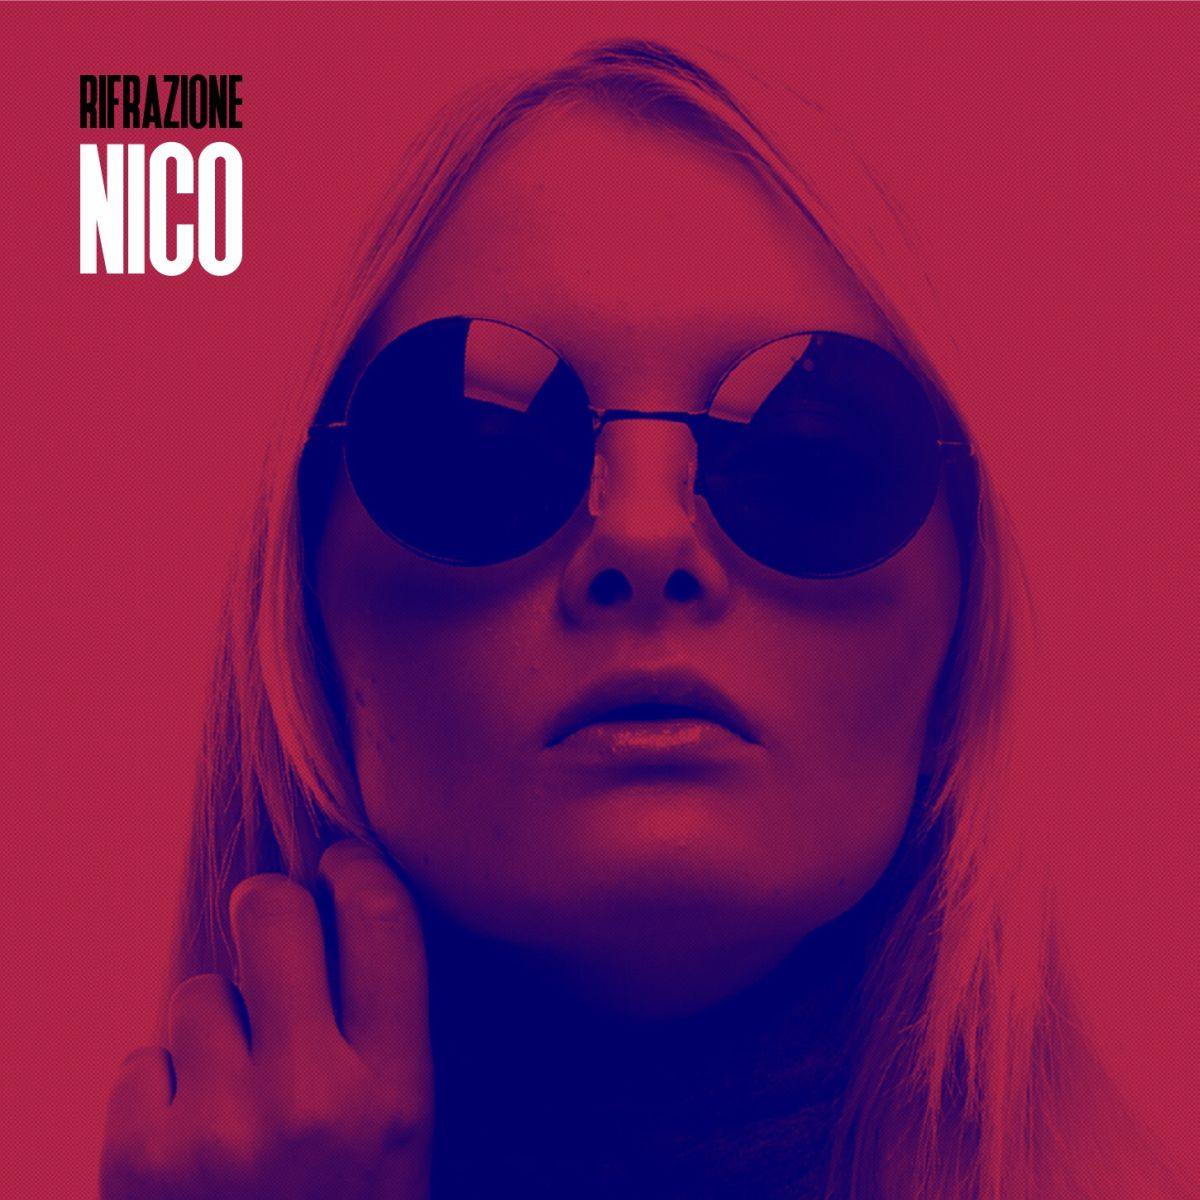 Disponibile in digitale “Nico”, nuovo singolo di Rifrazione